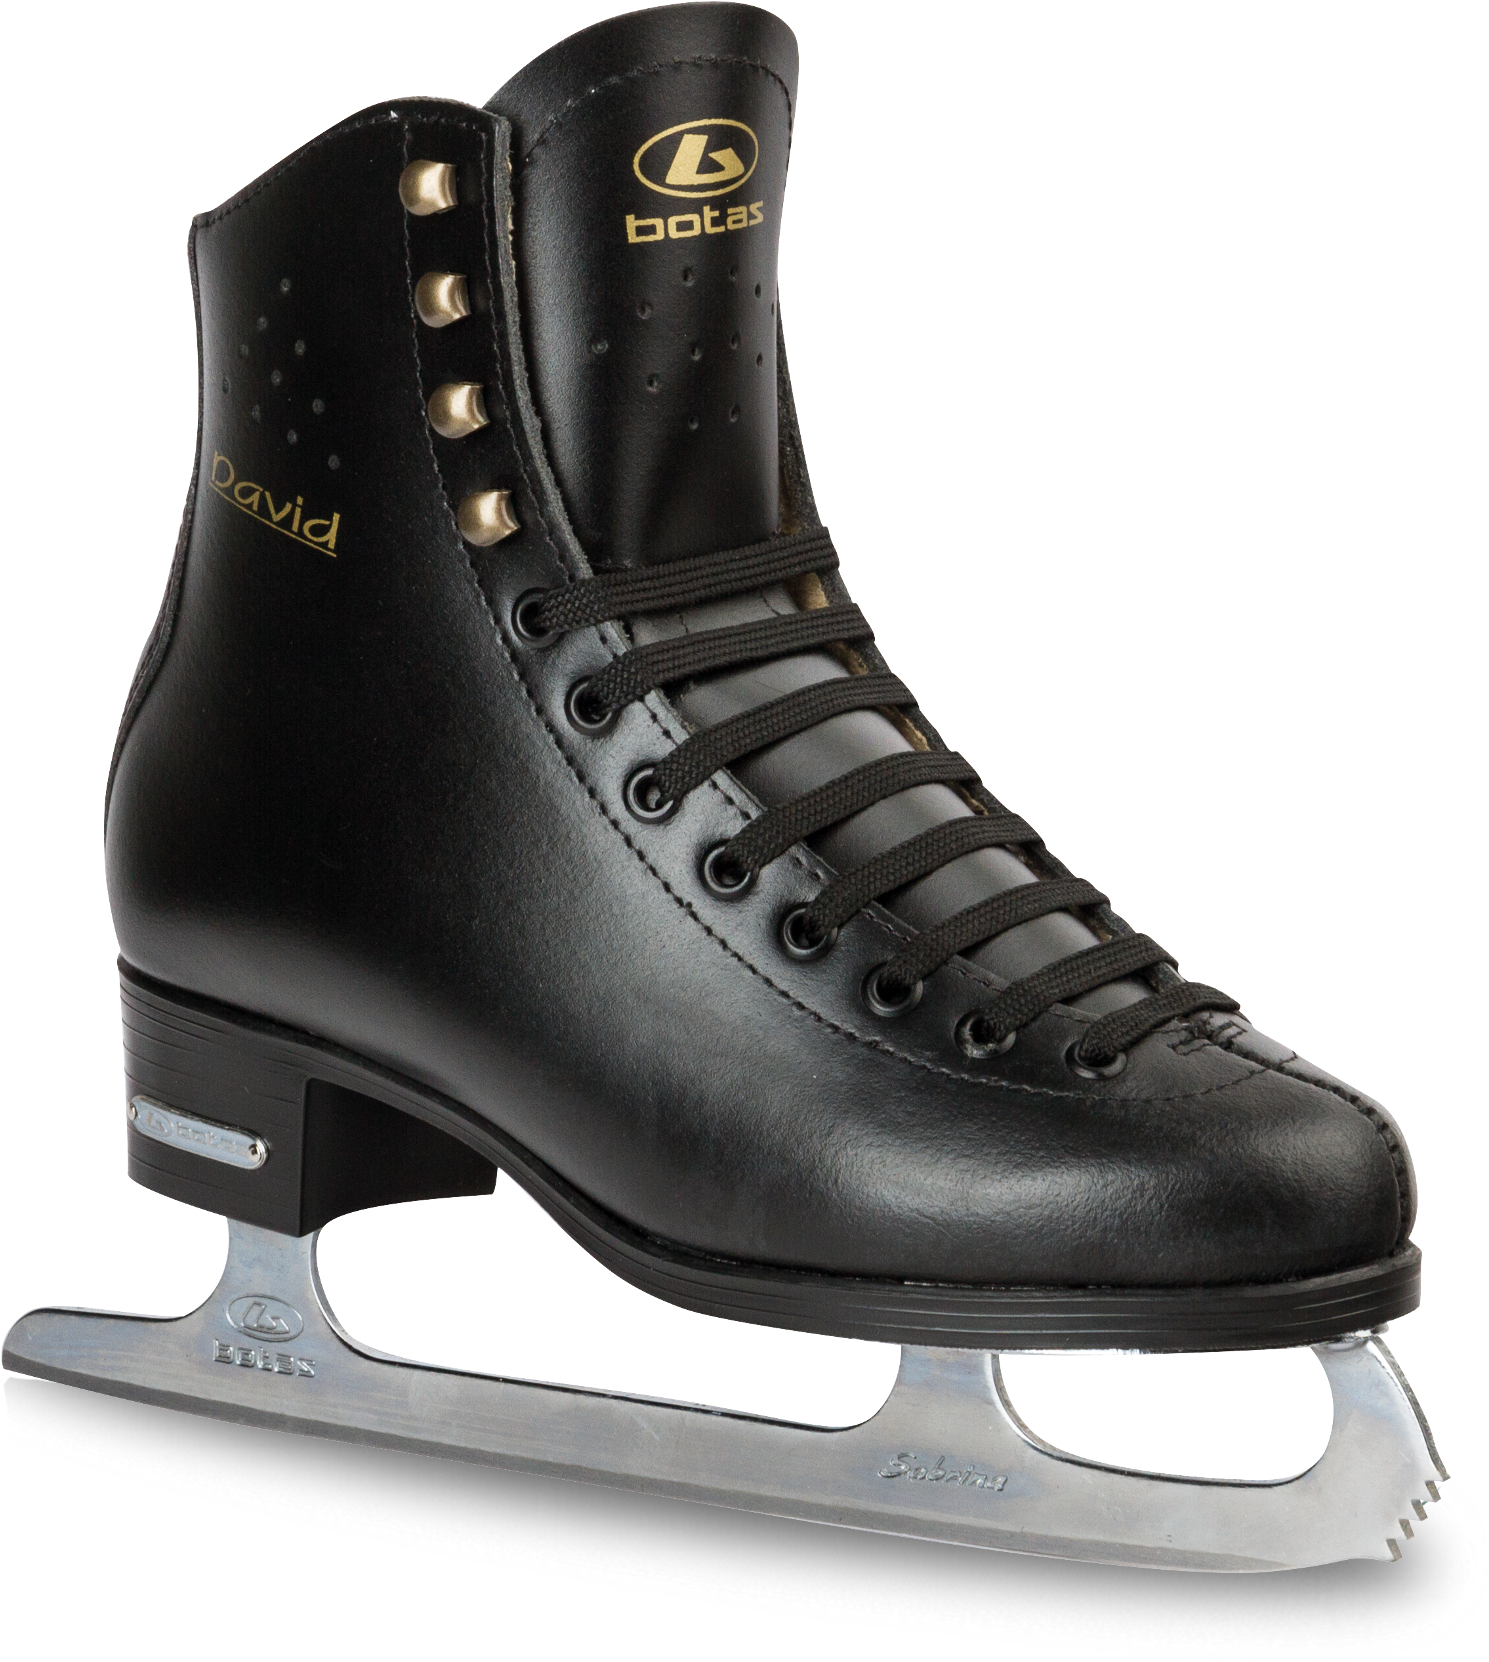 Botas Black Ice Skates - Botas - Black Mens Ice Skates Botas David (2000x2000), Png Download